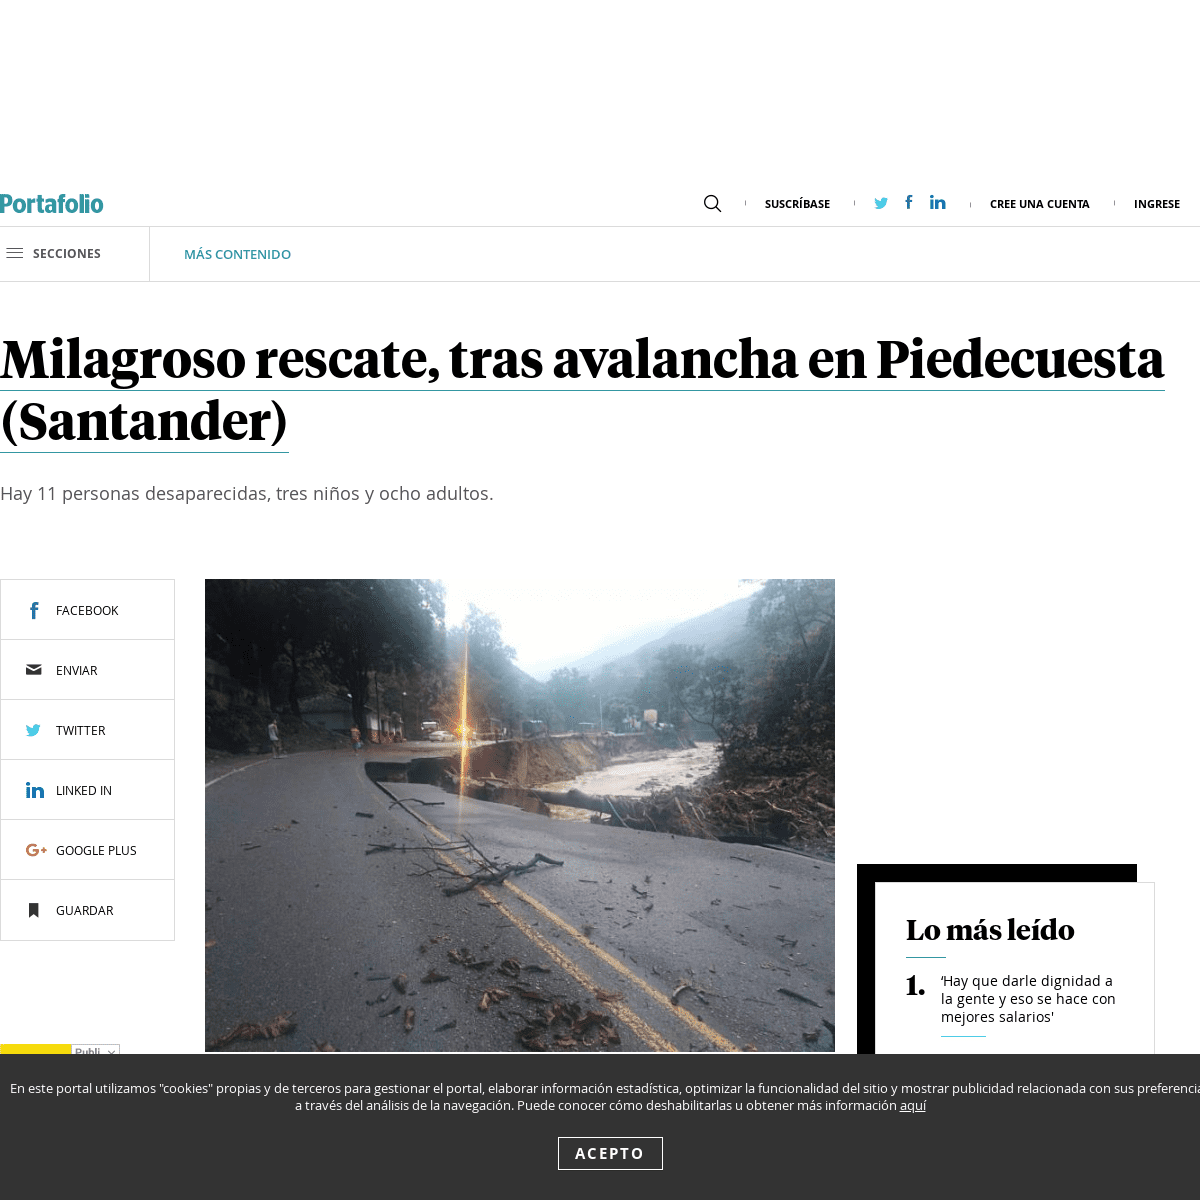 A complete backup of www.portafolio.co/mas-contenido/milagroso-rescate-tras-avalancha-en-piedecuesta-santander-538480